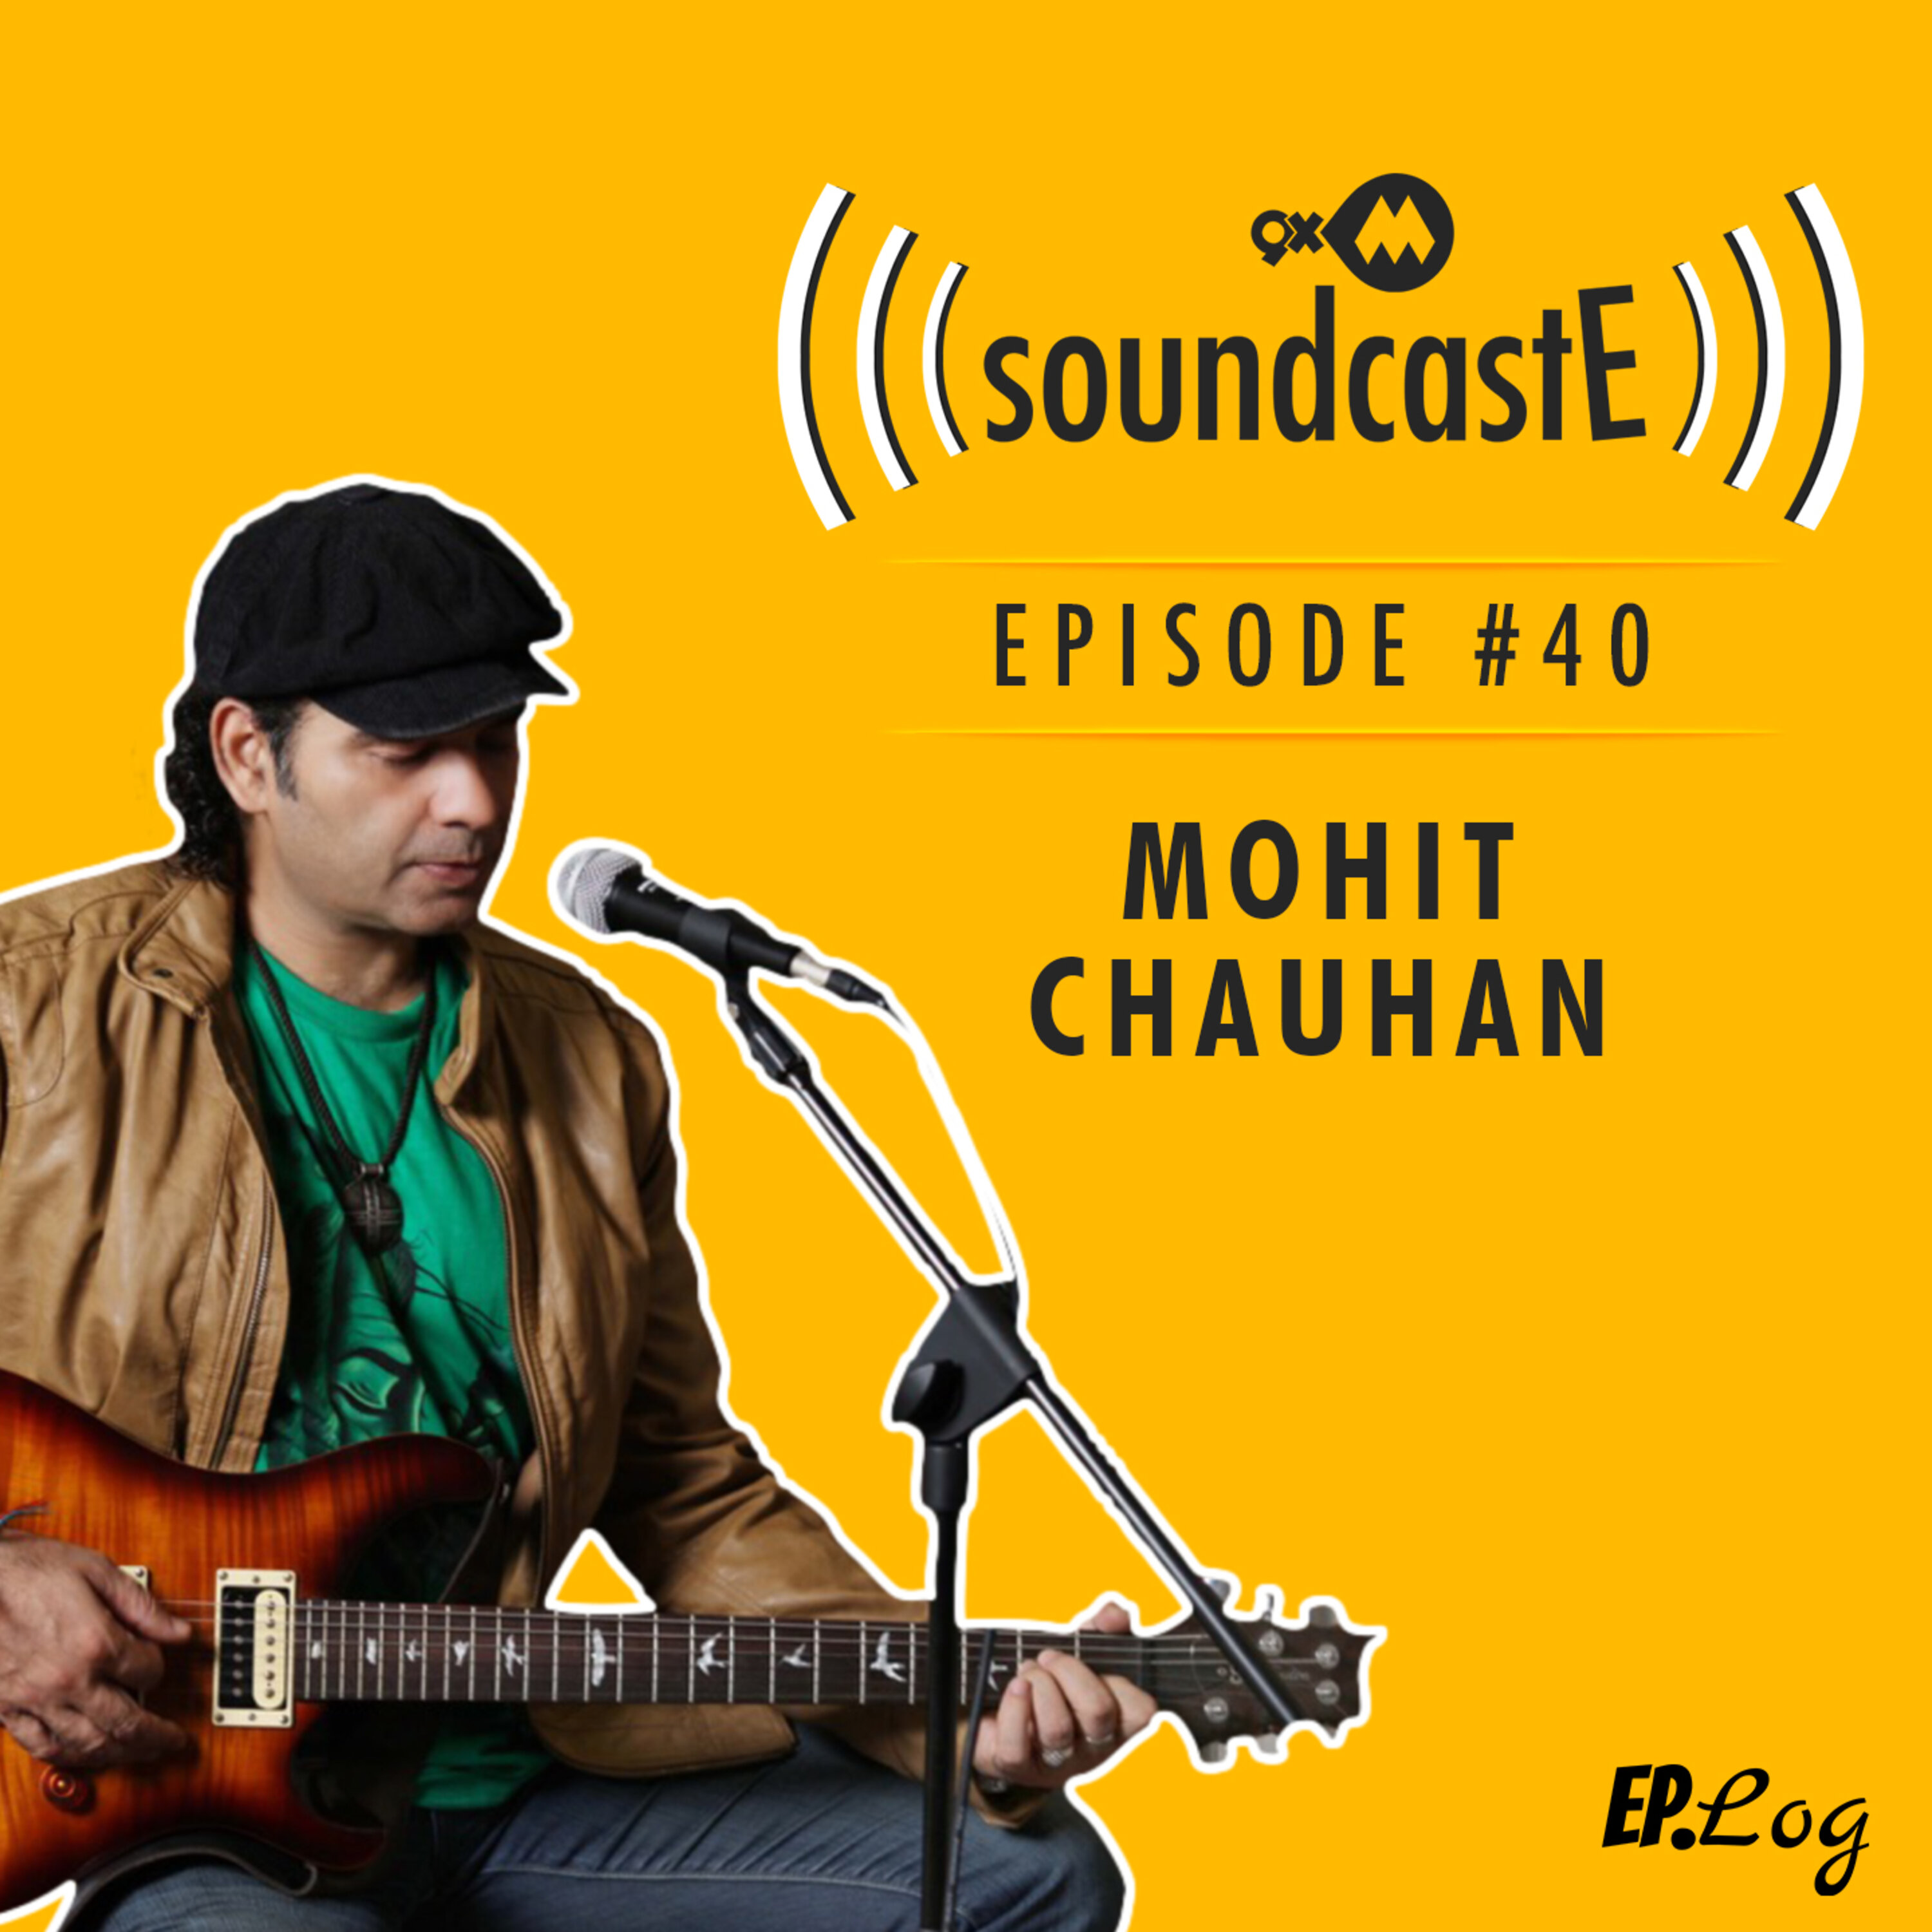 Ep.40: 9XM SoundcastE - Mohit Chauhan